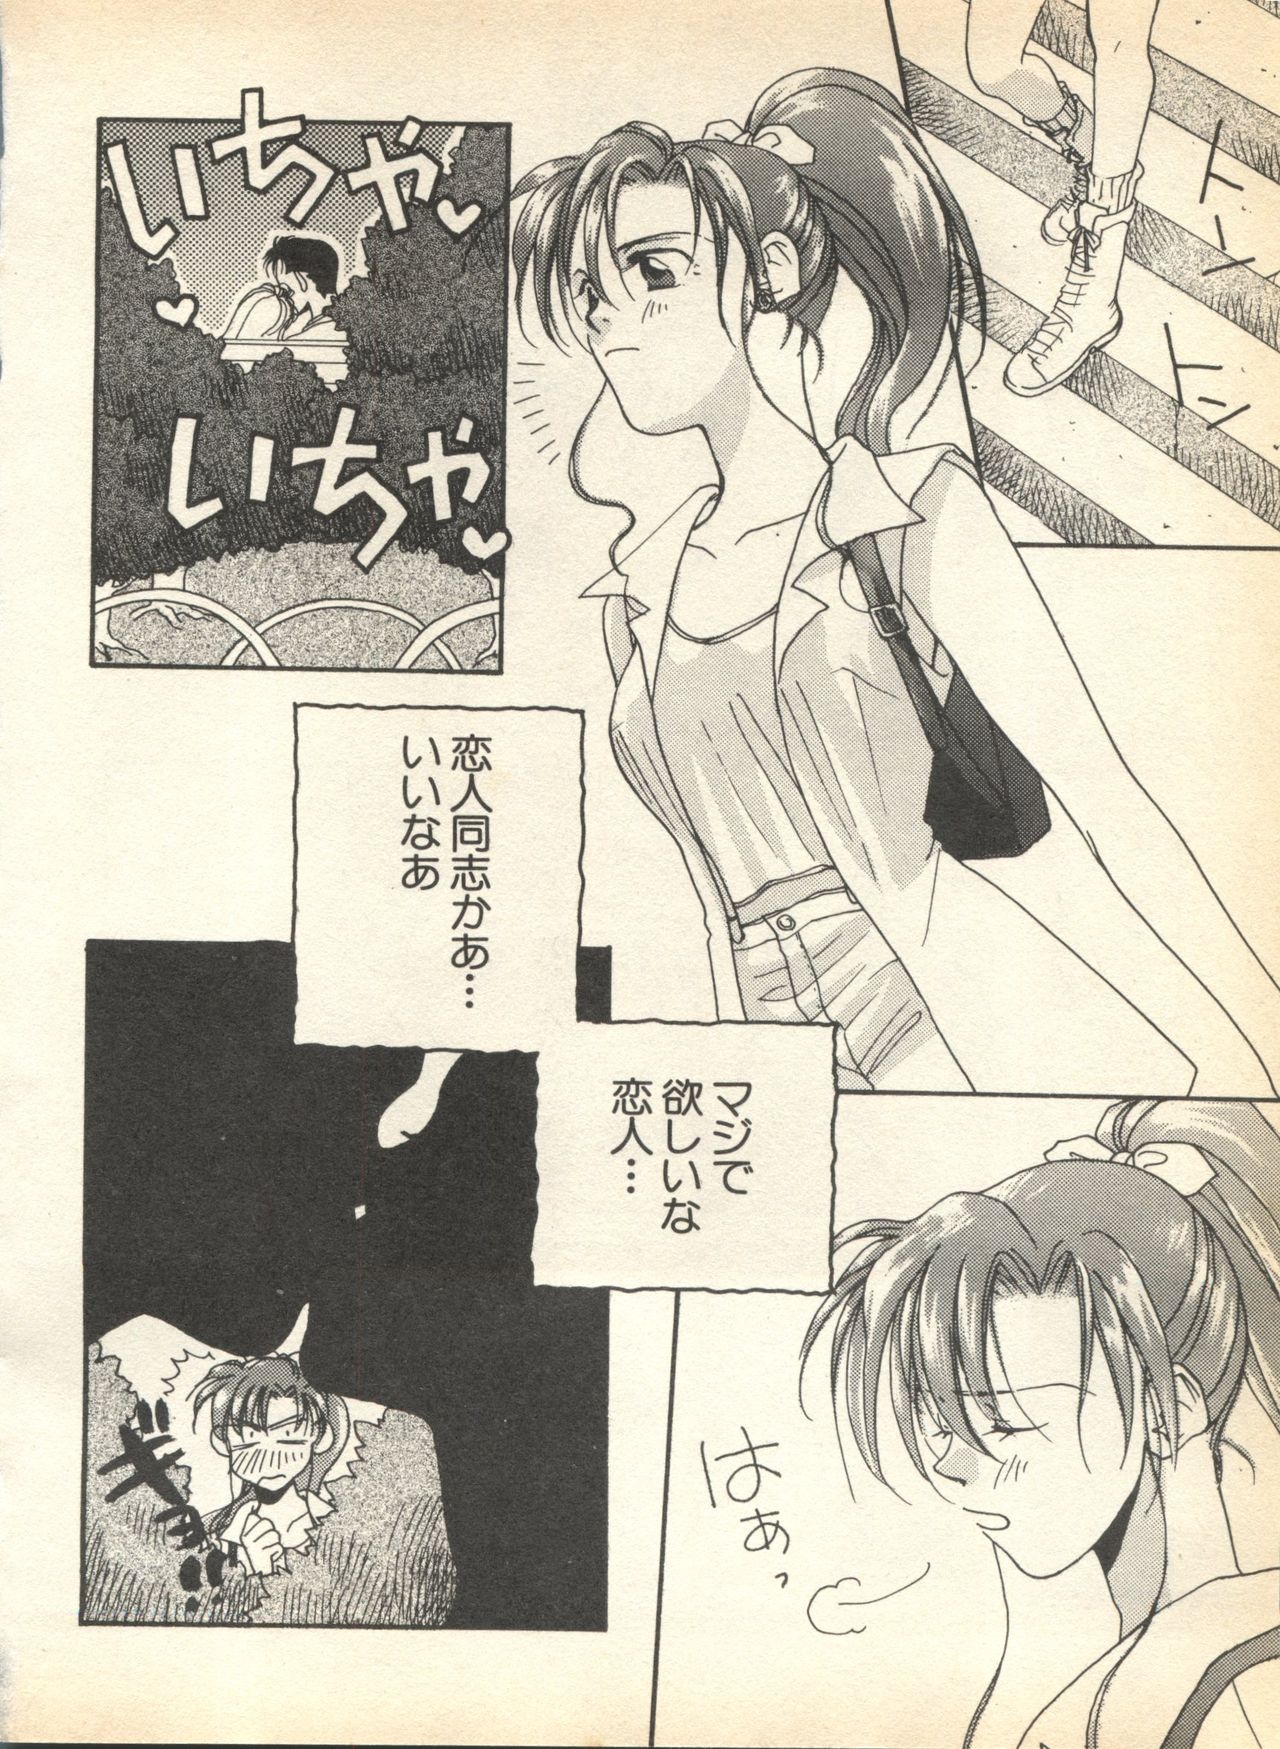 [Anthology] Lunatic Party 7 (Bishoujo Senshi Sailor Moon) 141